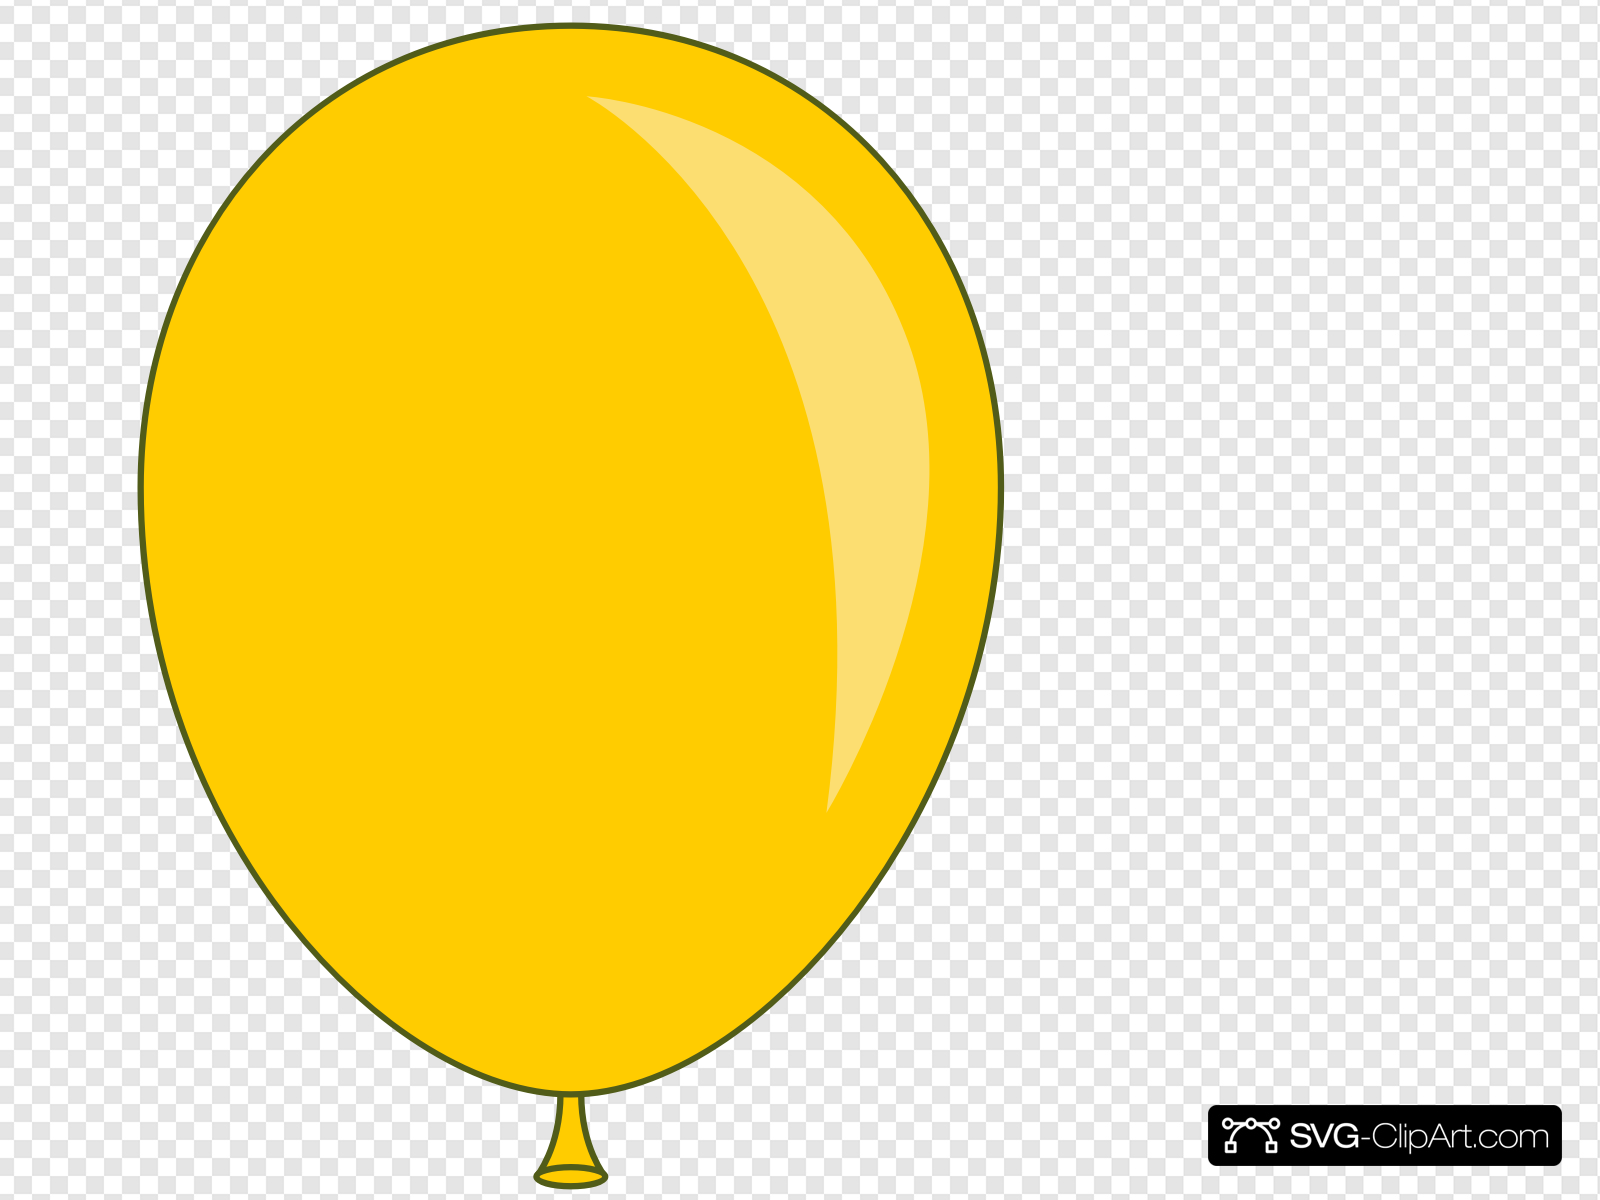 Ballon clipart yellow. I balloon clip art